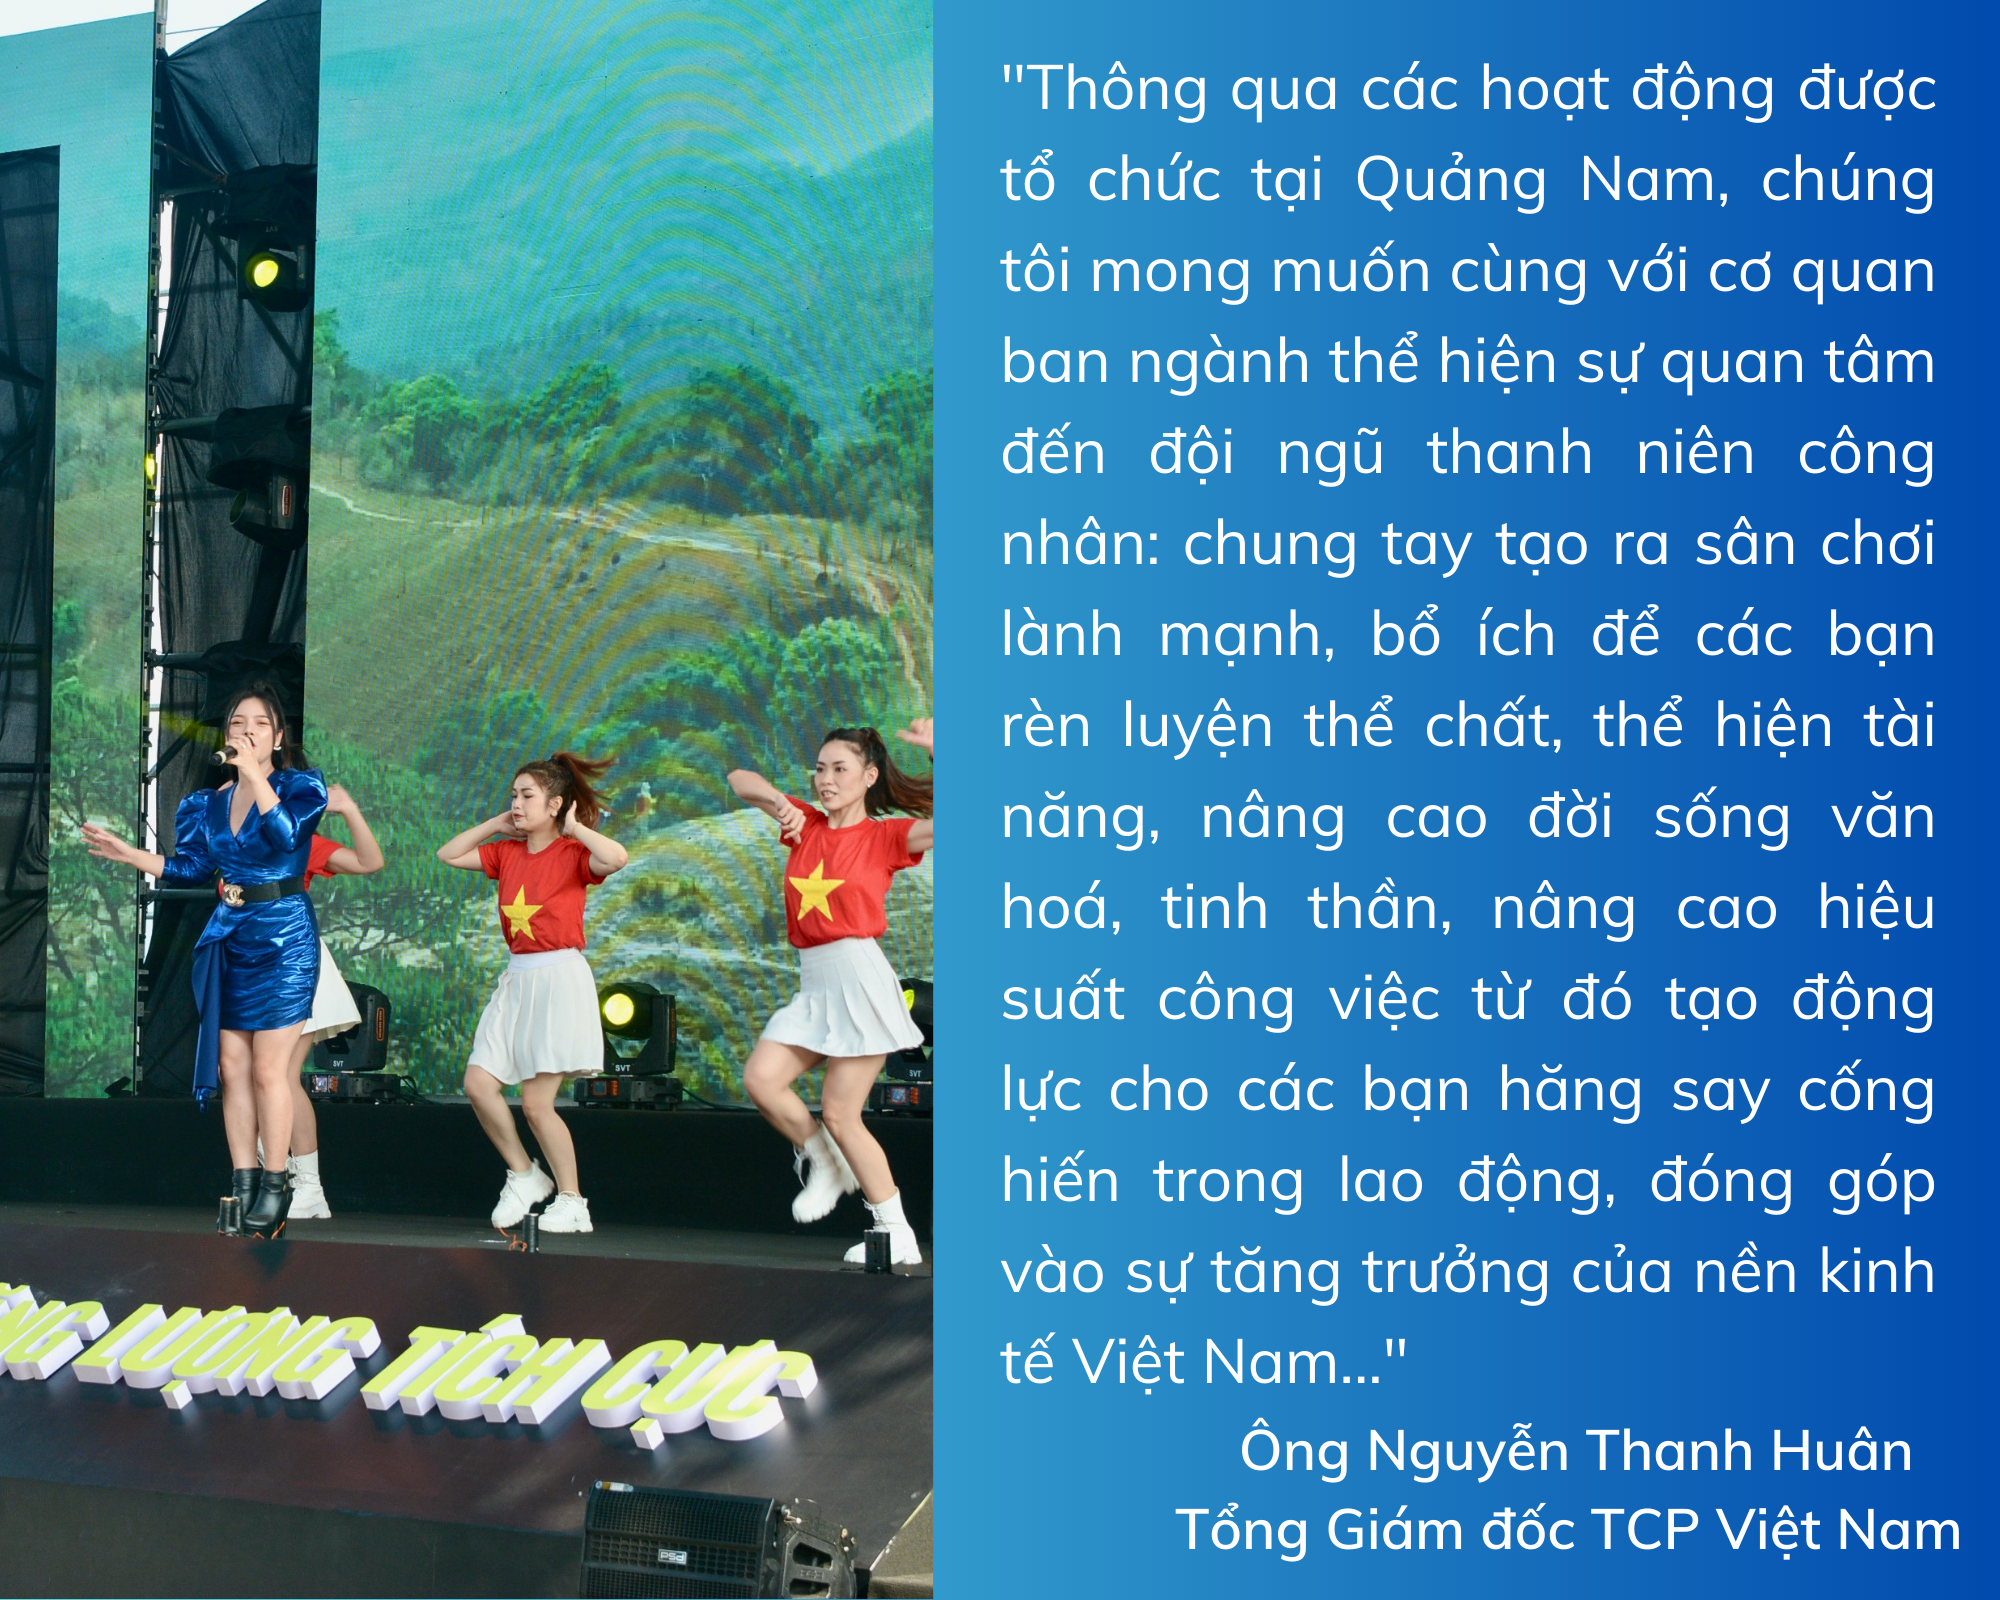 Quảng Nam: Sôi động Ngày hội thanh niên công nhân lan tỏa năng lượng tích cực